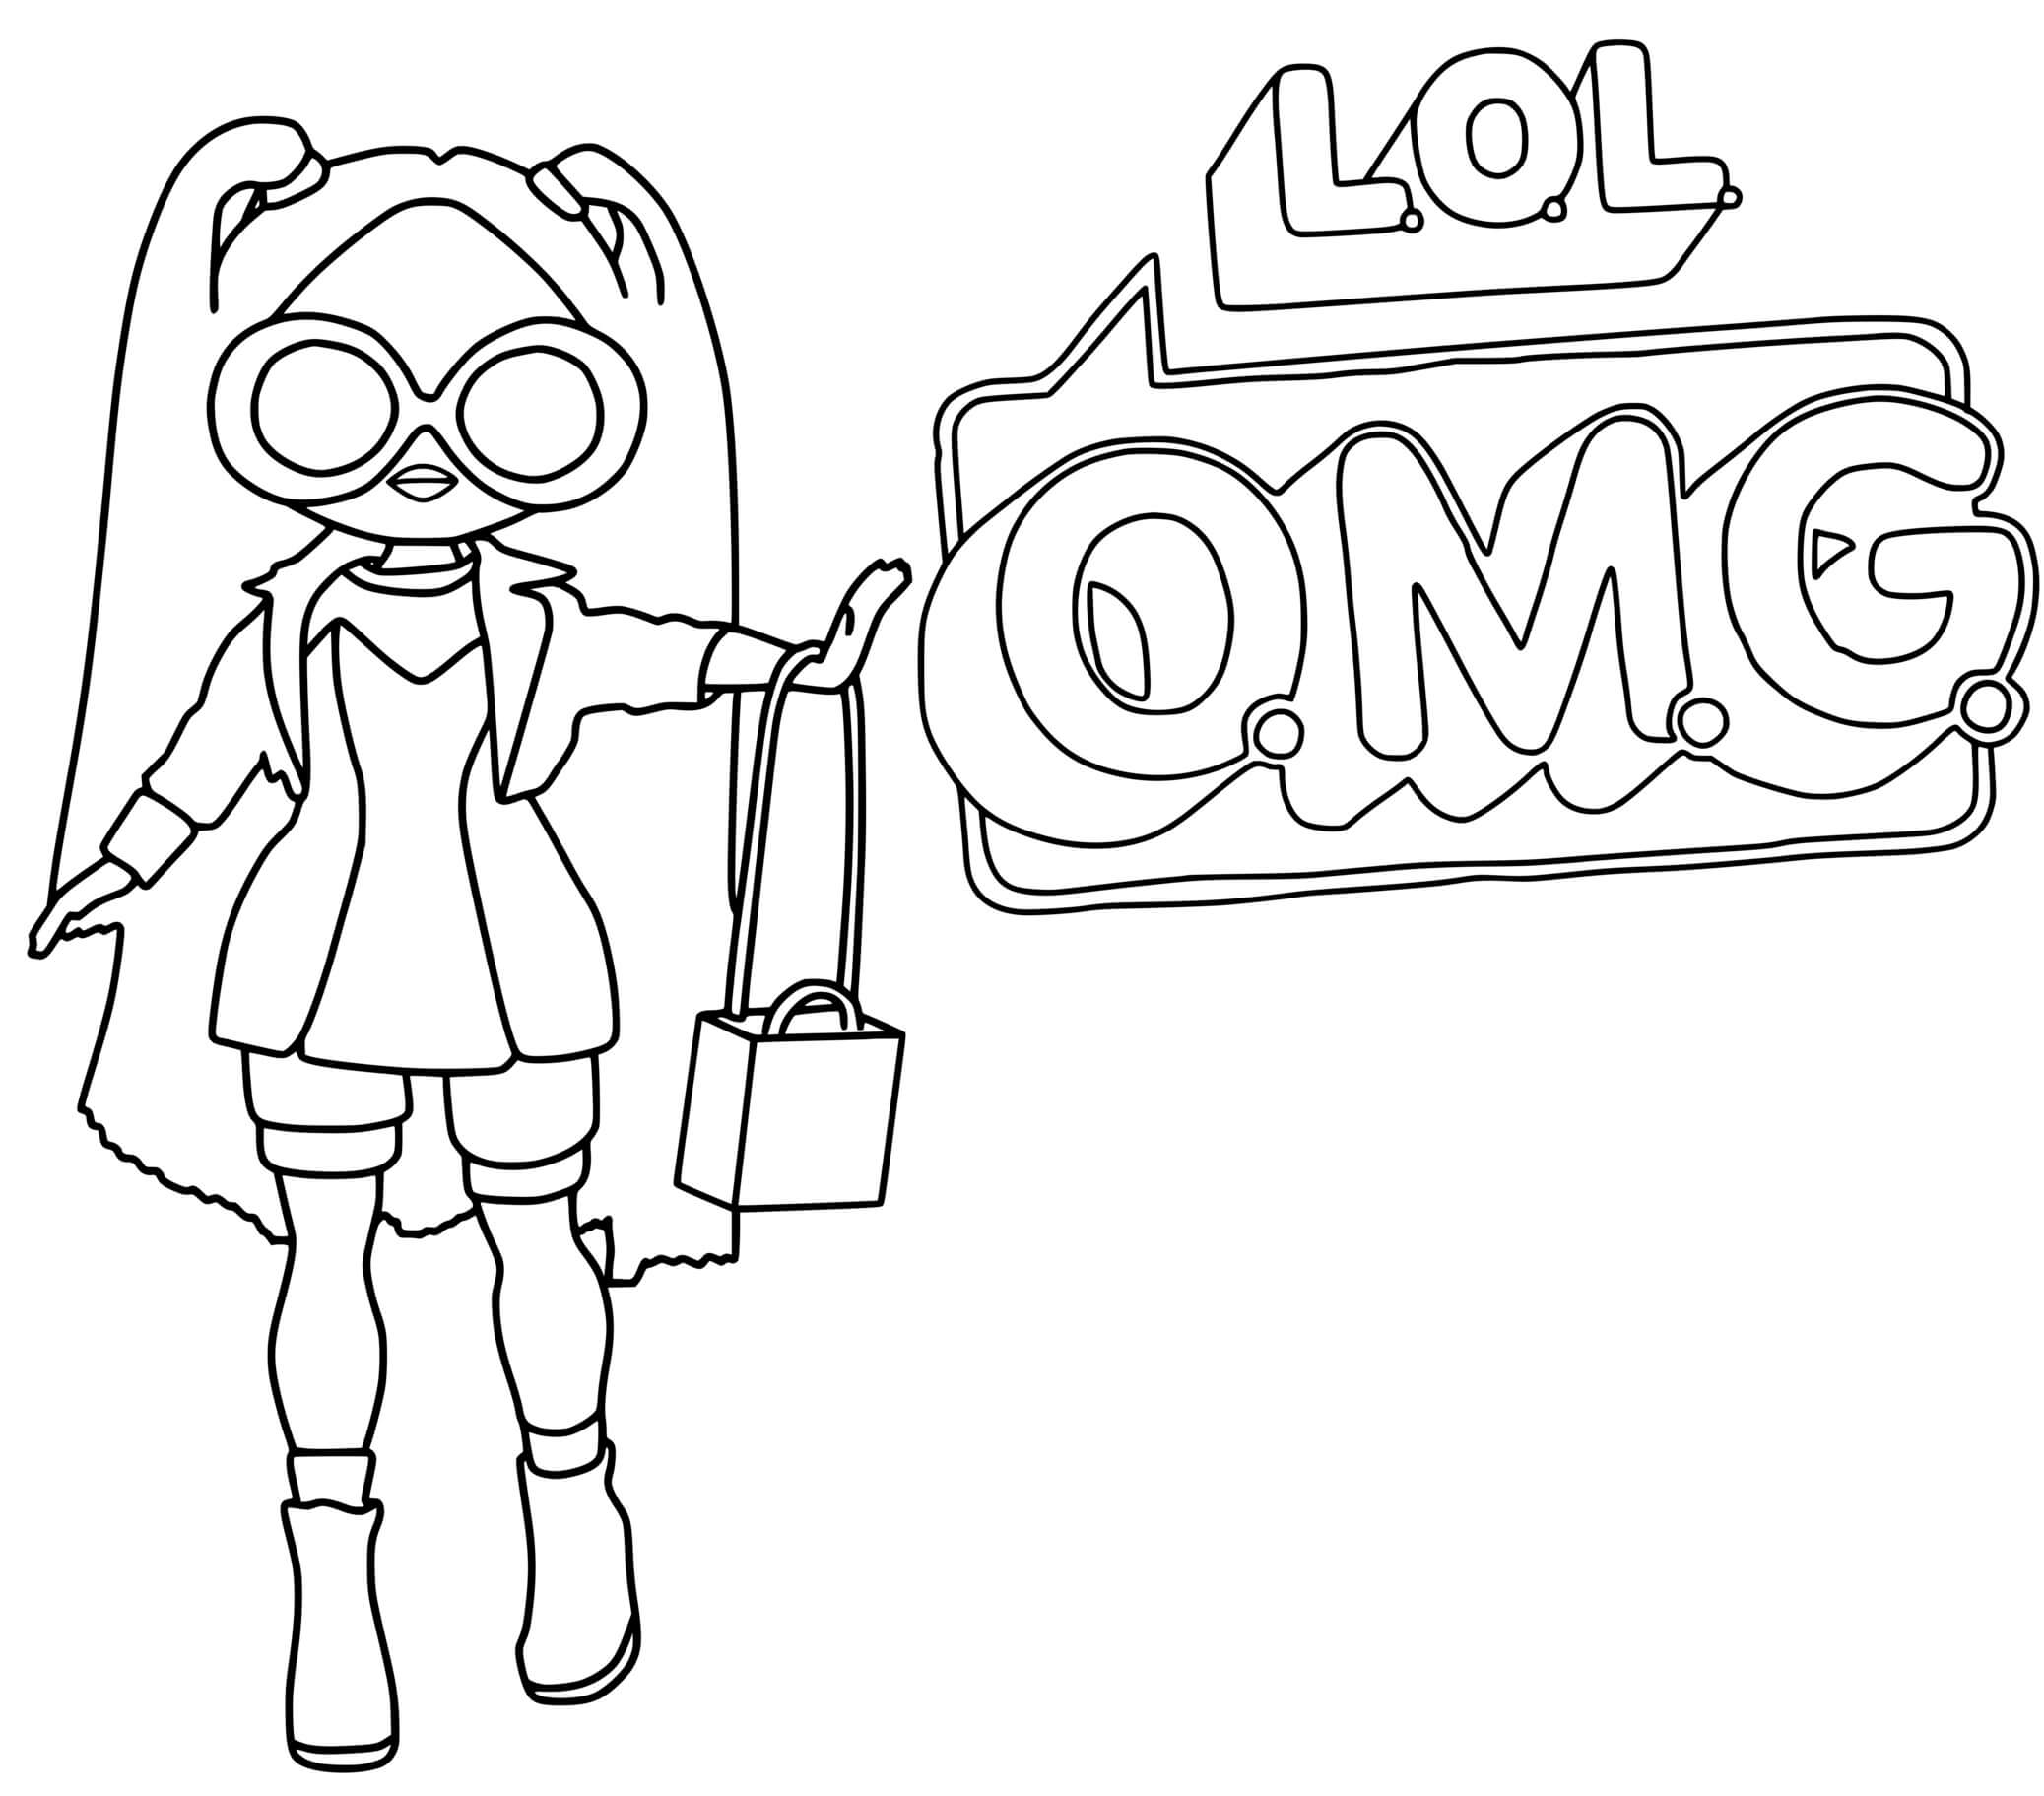 Lol Omg Logo ALT Grrrl Girl Coloring Page